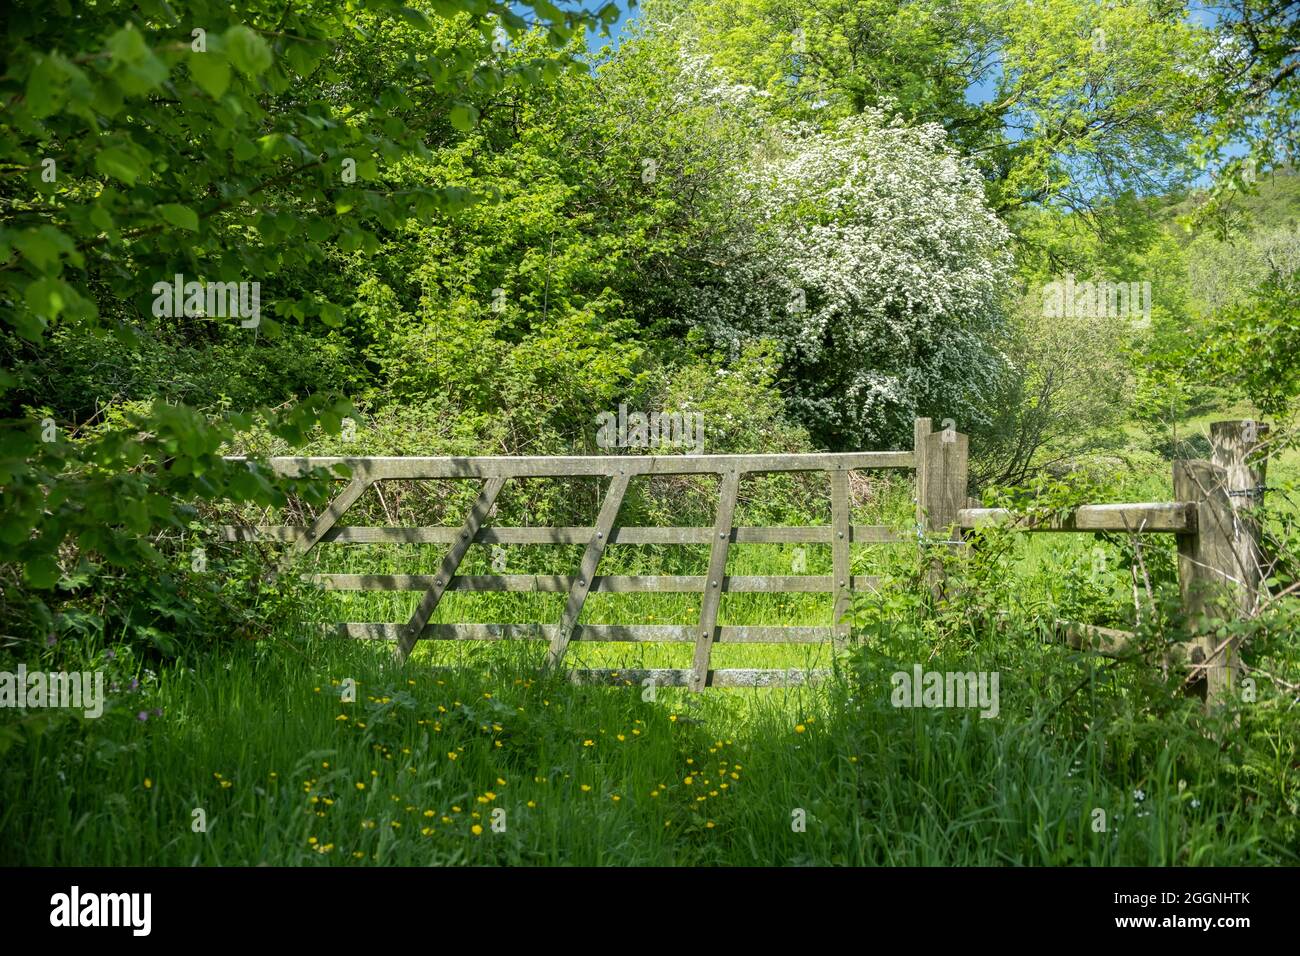 Puerta de campo de madera con exuberante campiña verde alrededor, Gwaun Valle Pembrokeshire Gales Foto de stock